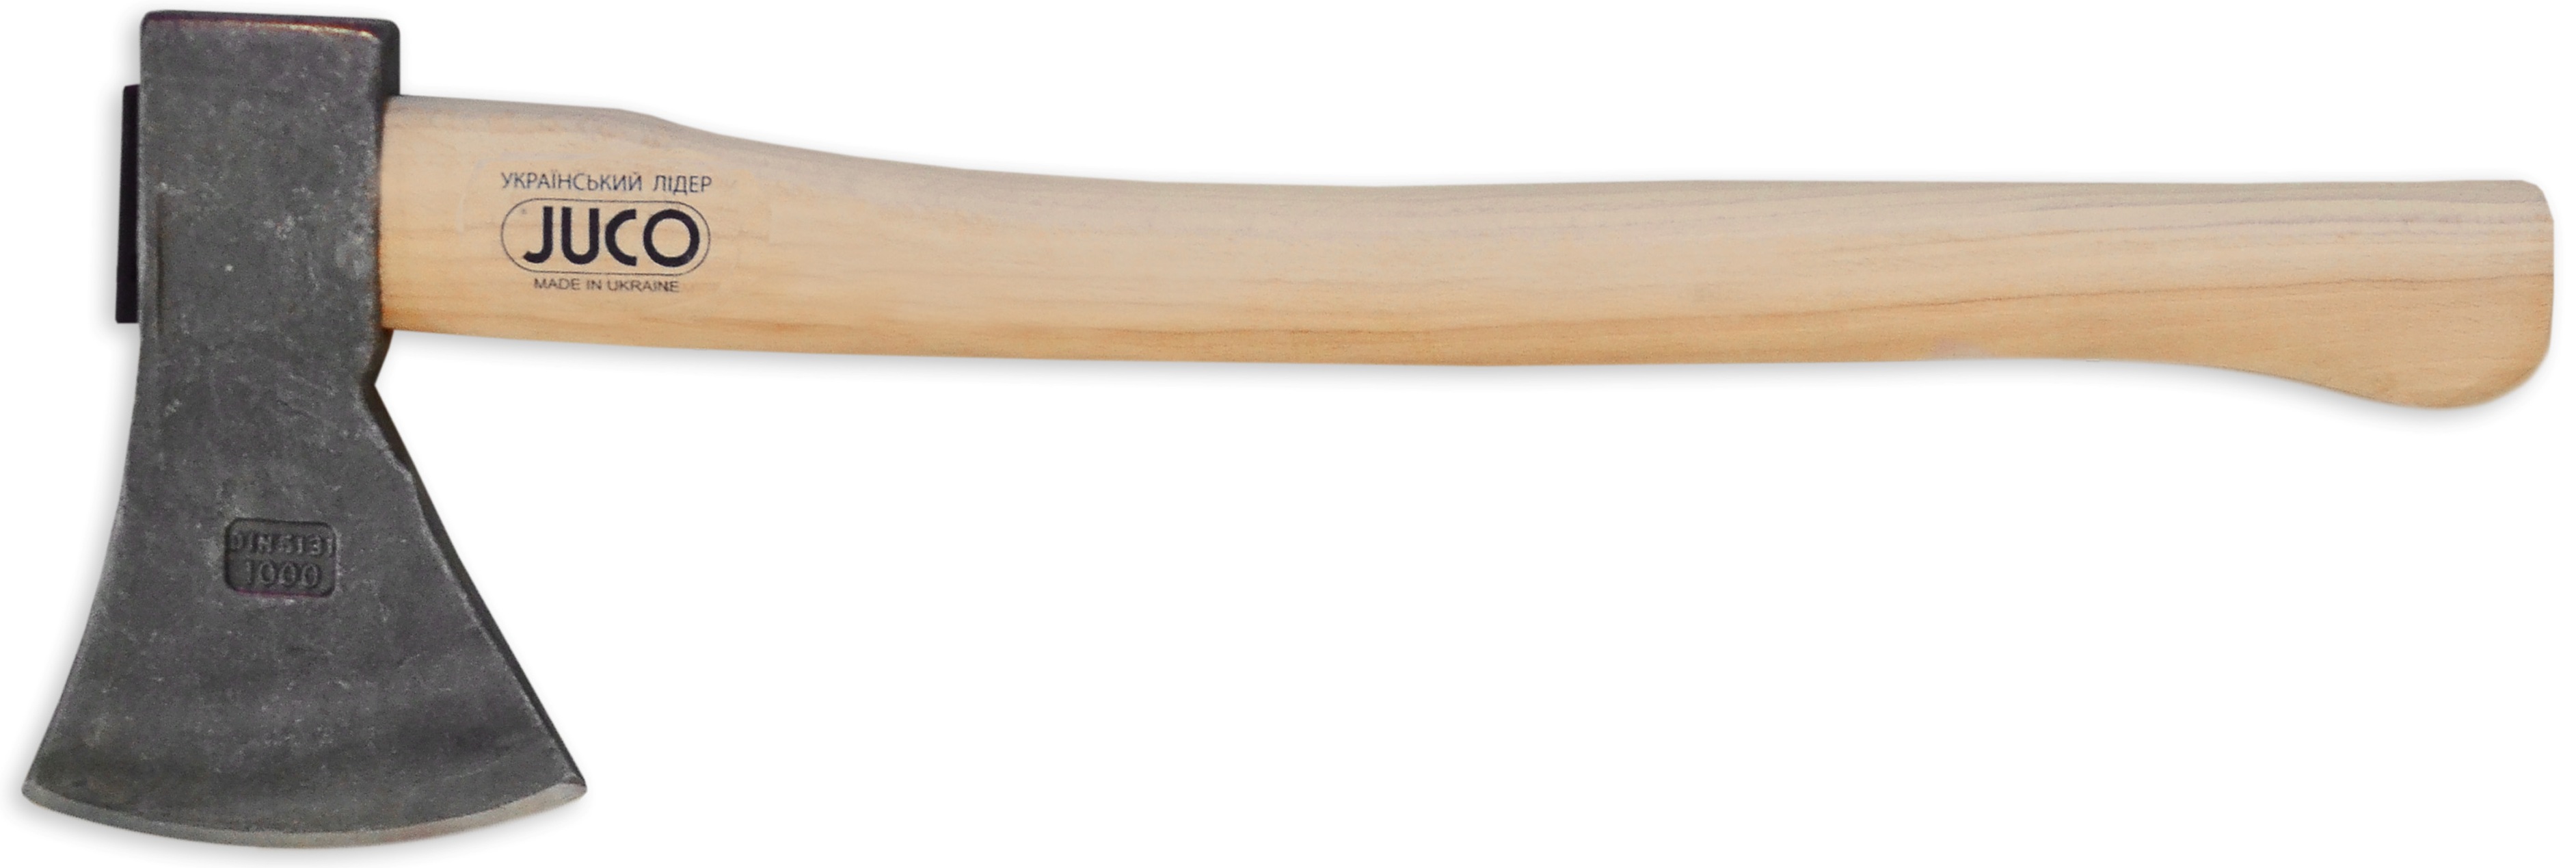 39-659 Сокира з дерев'яною ручкою, JUCO, 1800 г | Україна